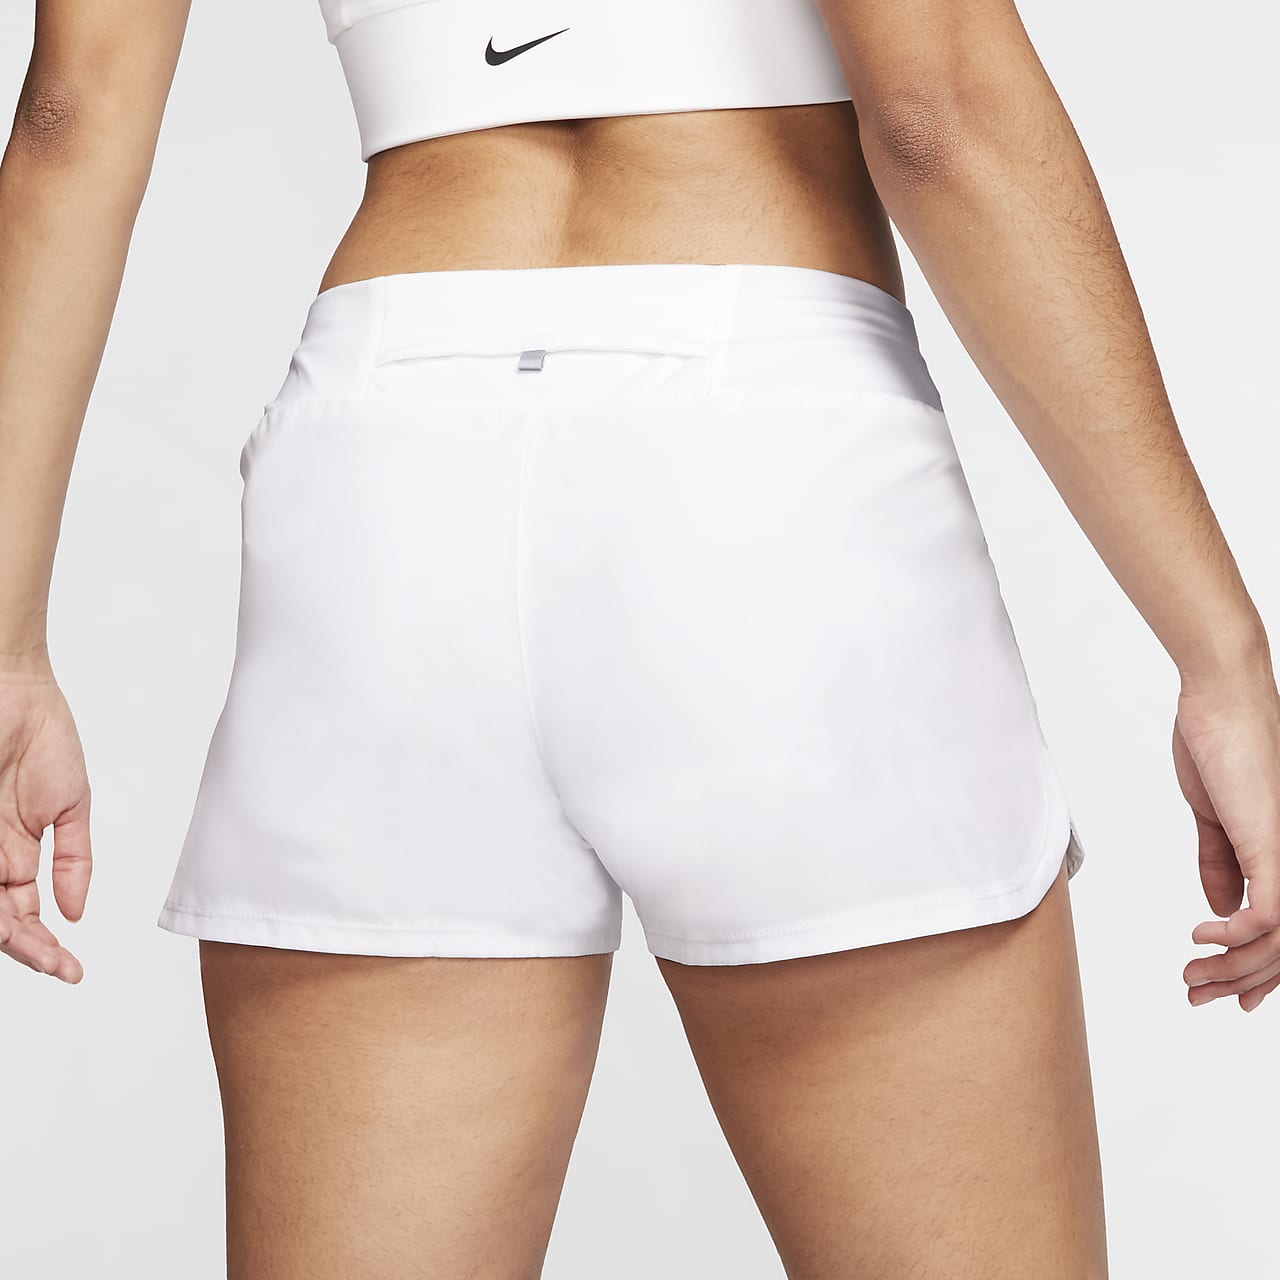 white nike running shorts womens